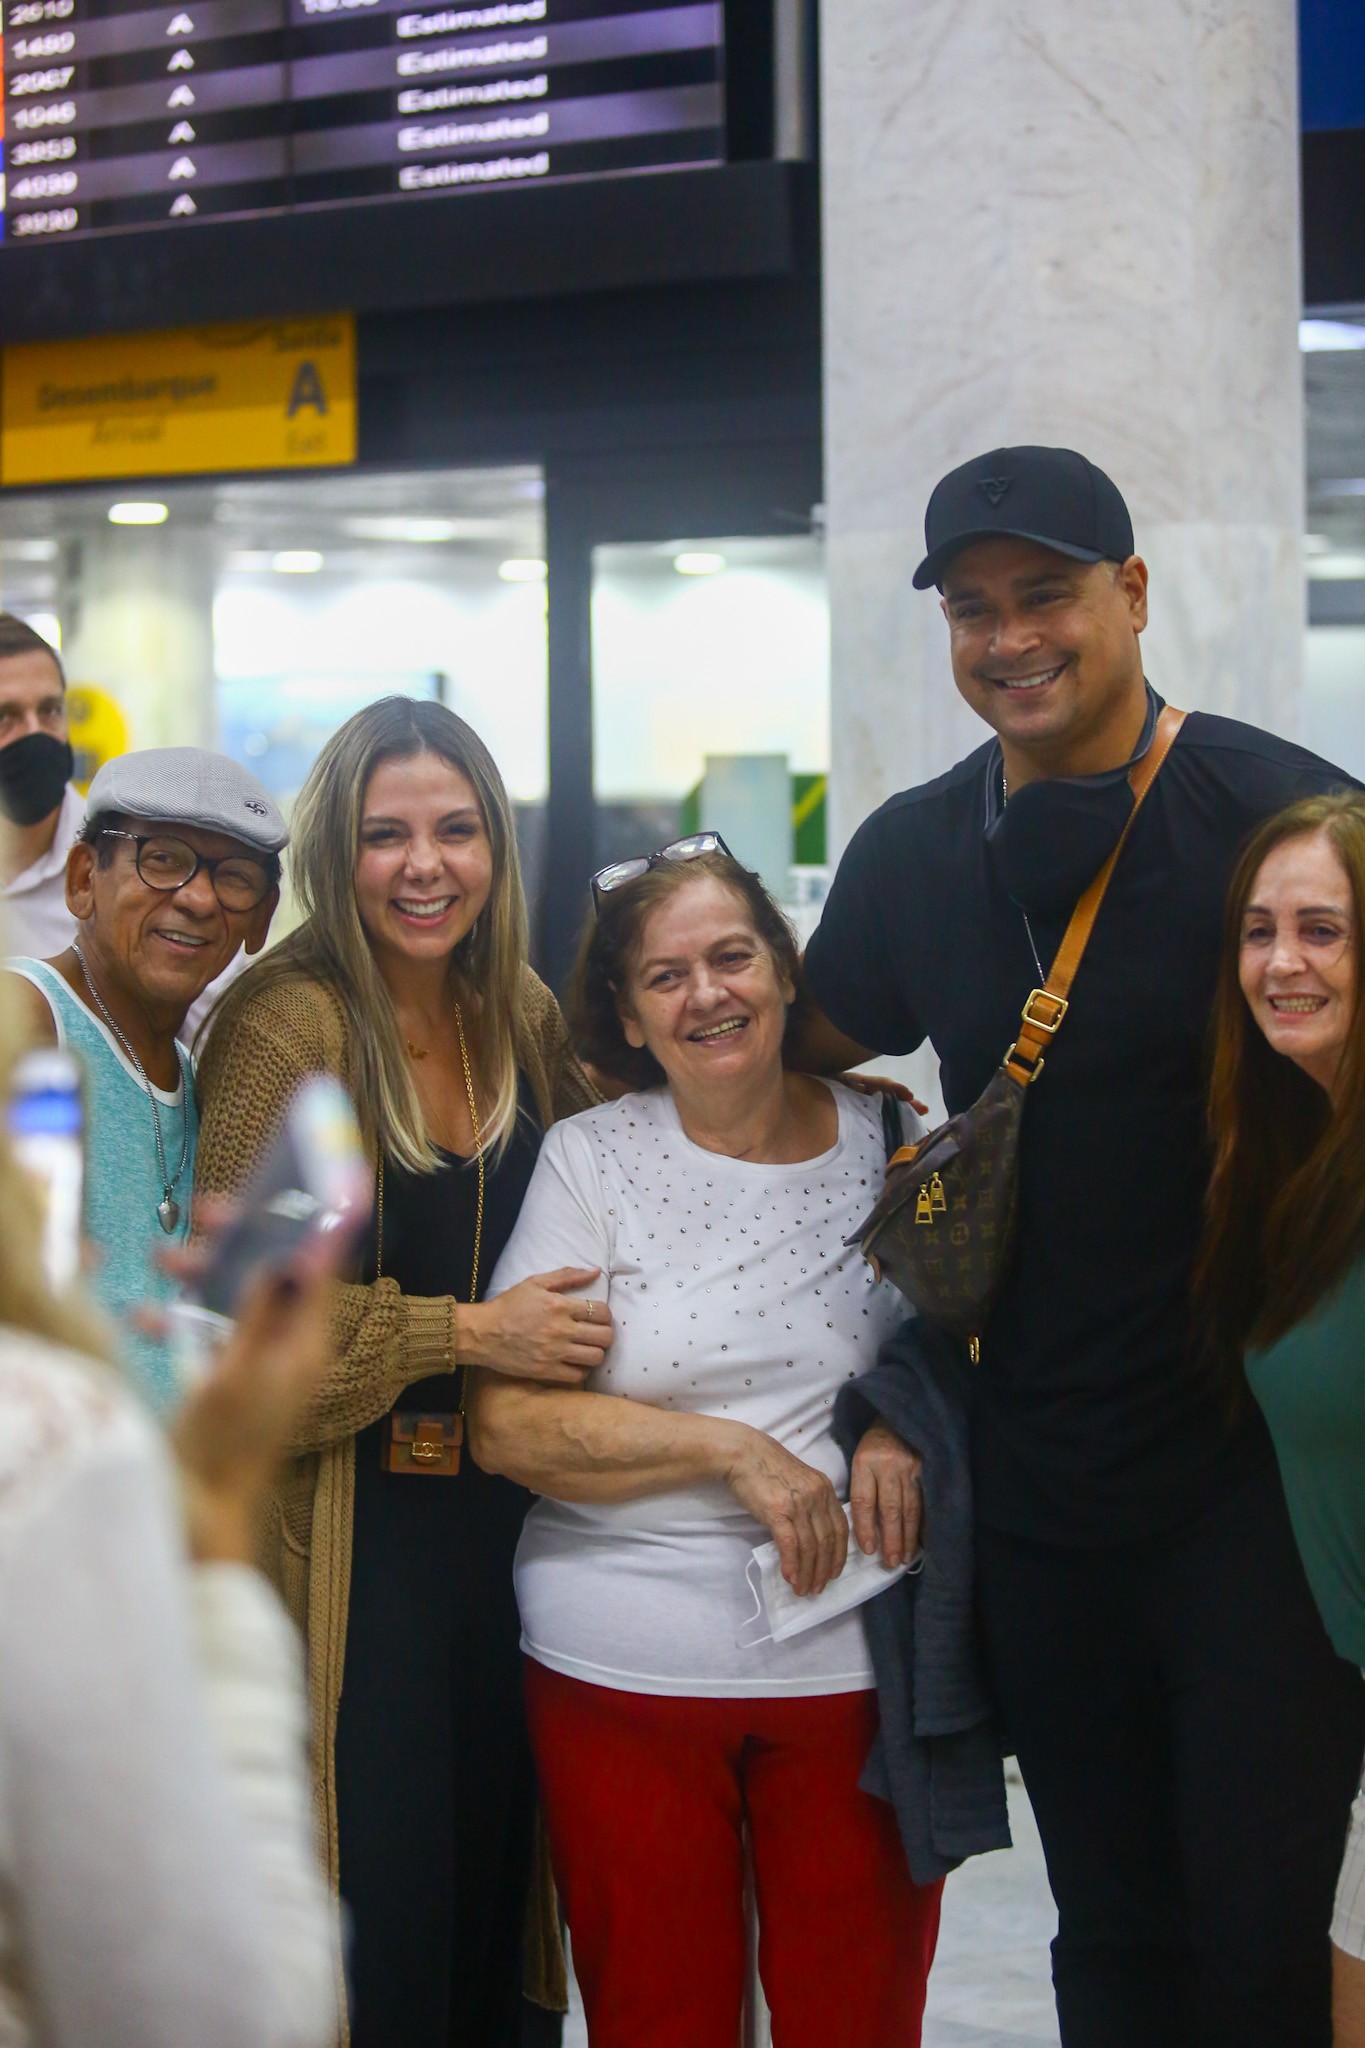 Carla Perez e Xanddy posa com fãs em aeroporto do Rio de Janeiro (Foto: Vitor Pereira/AgNews)